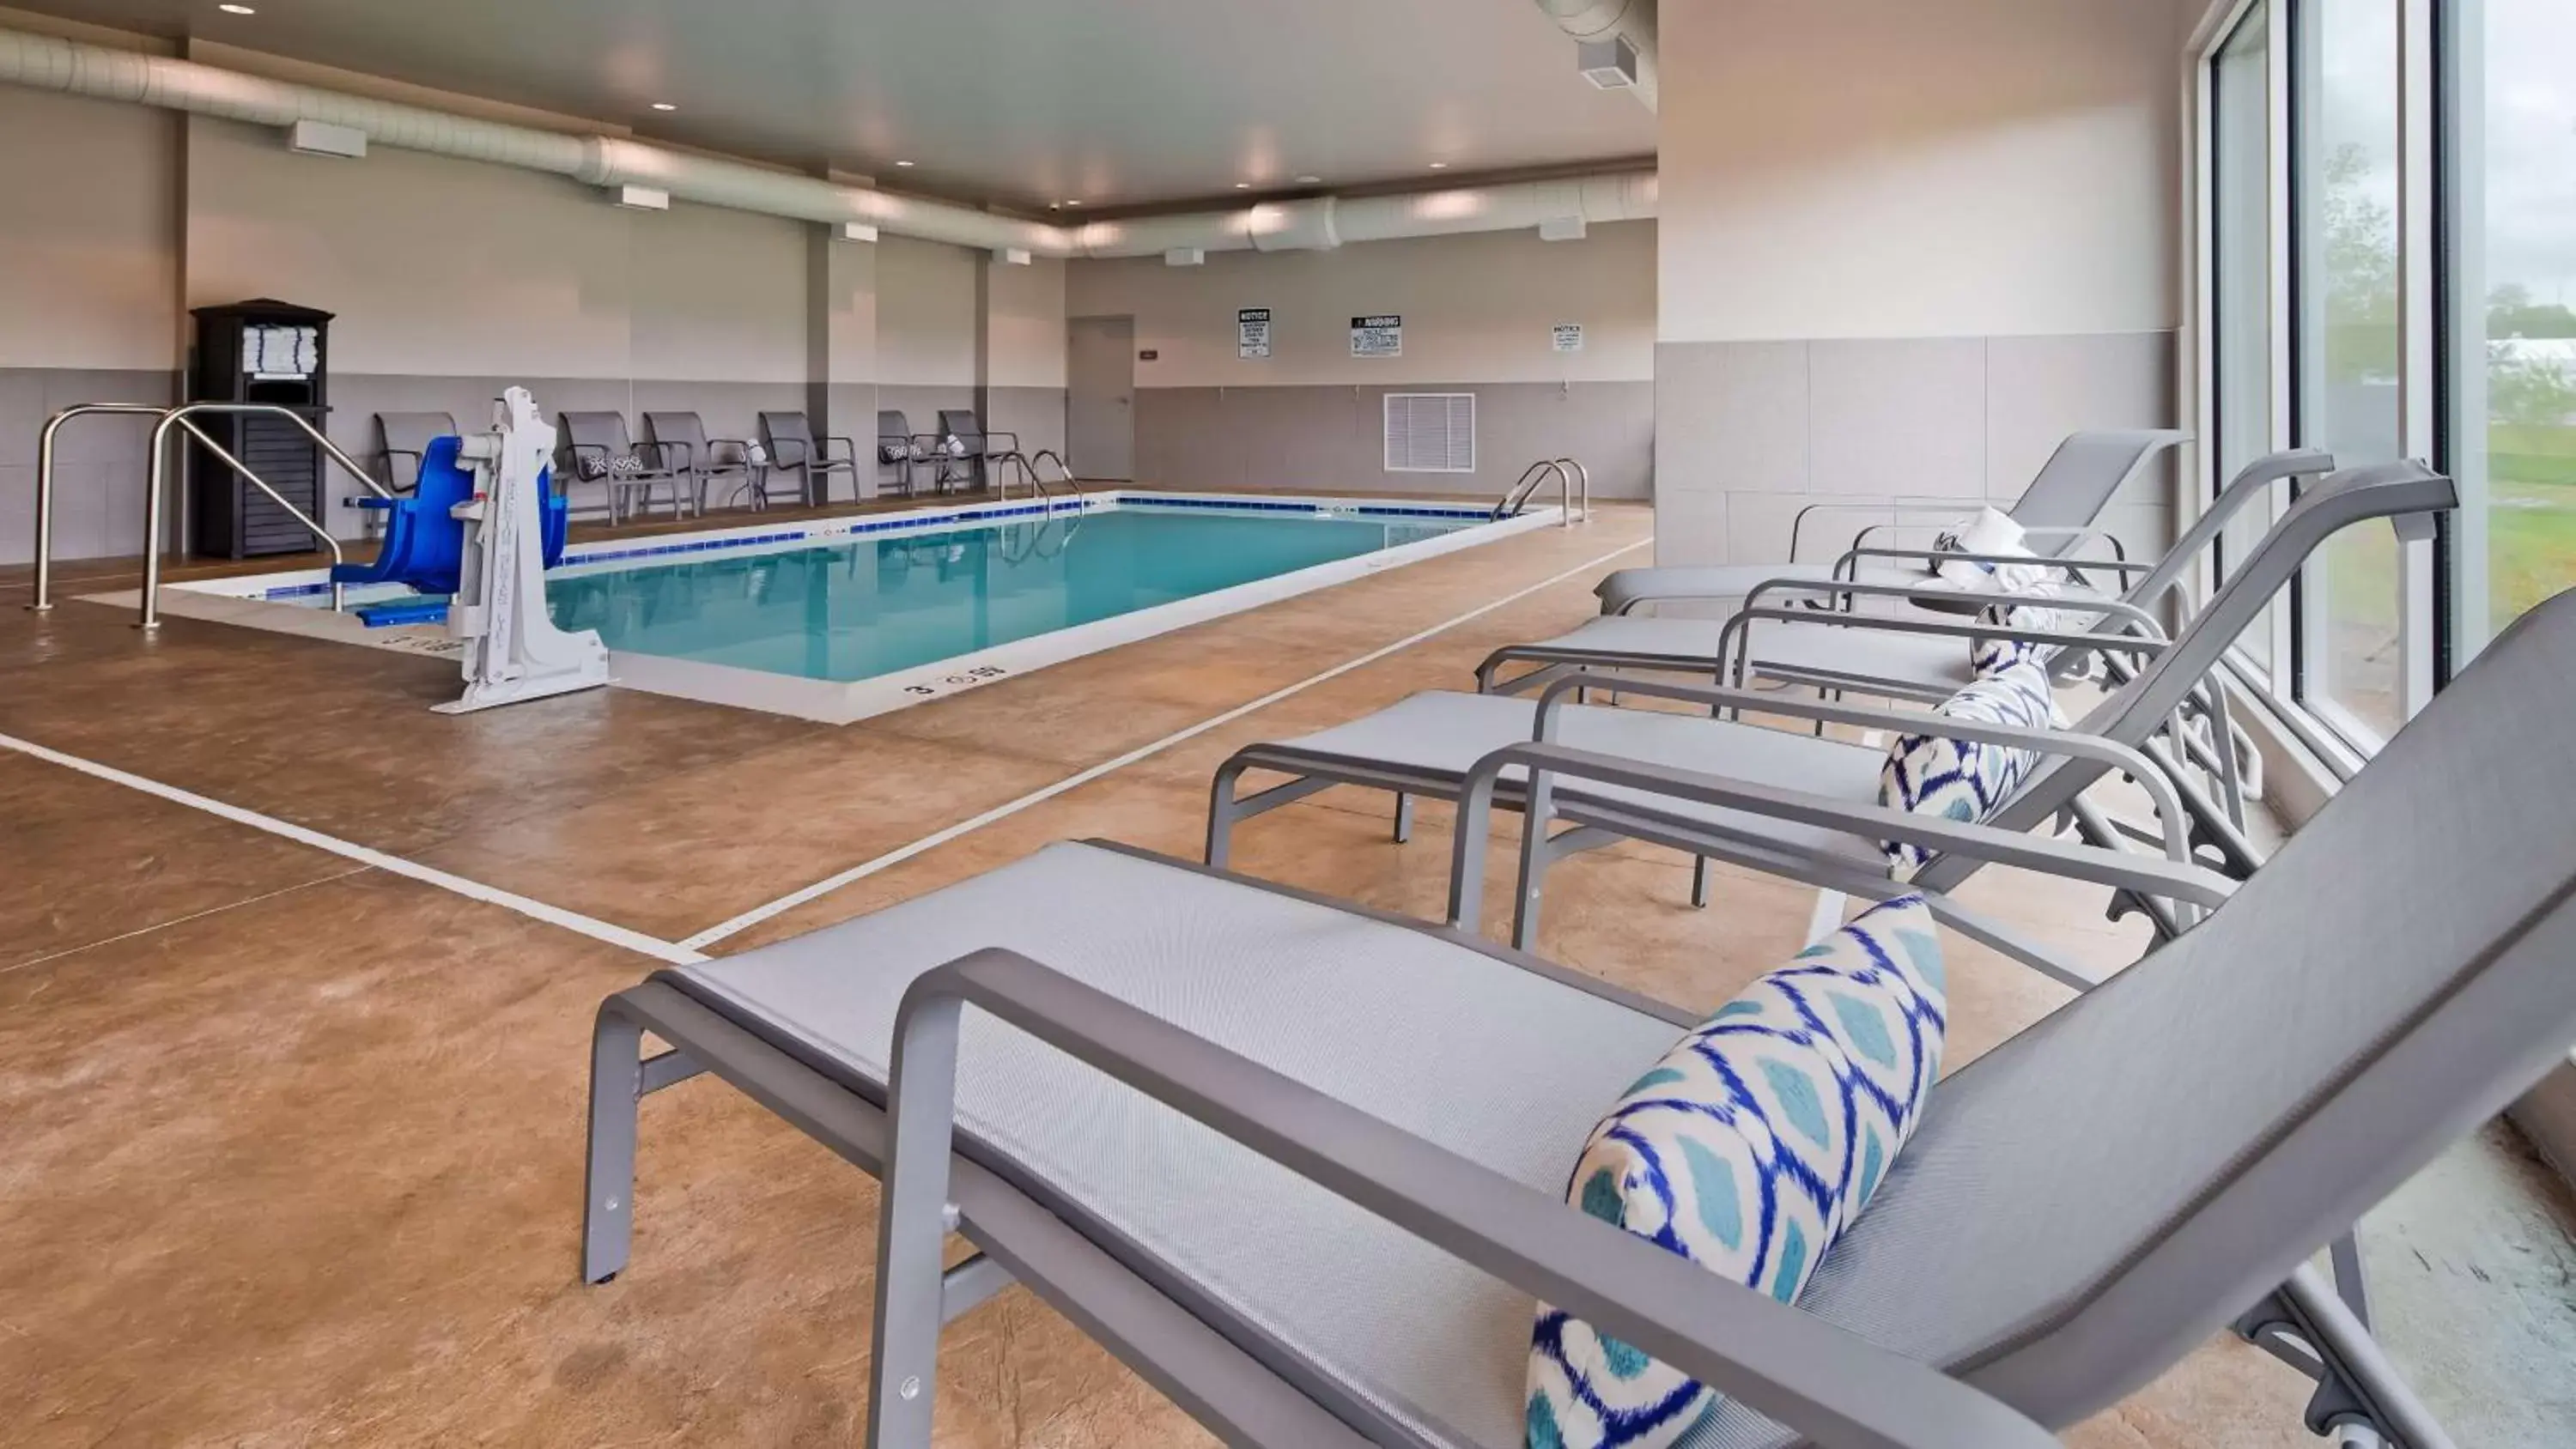 On site, Swimming Pool in Best Western Plus Parkside Inn & Suites